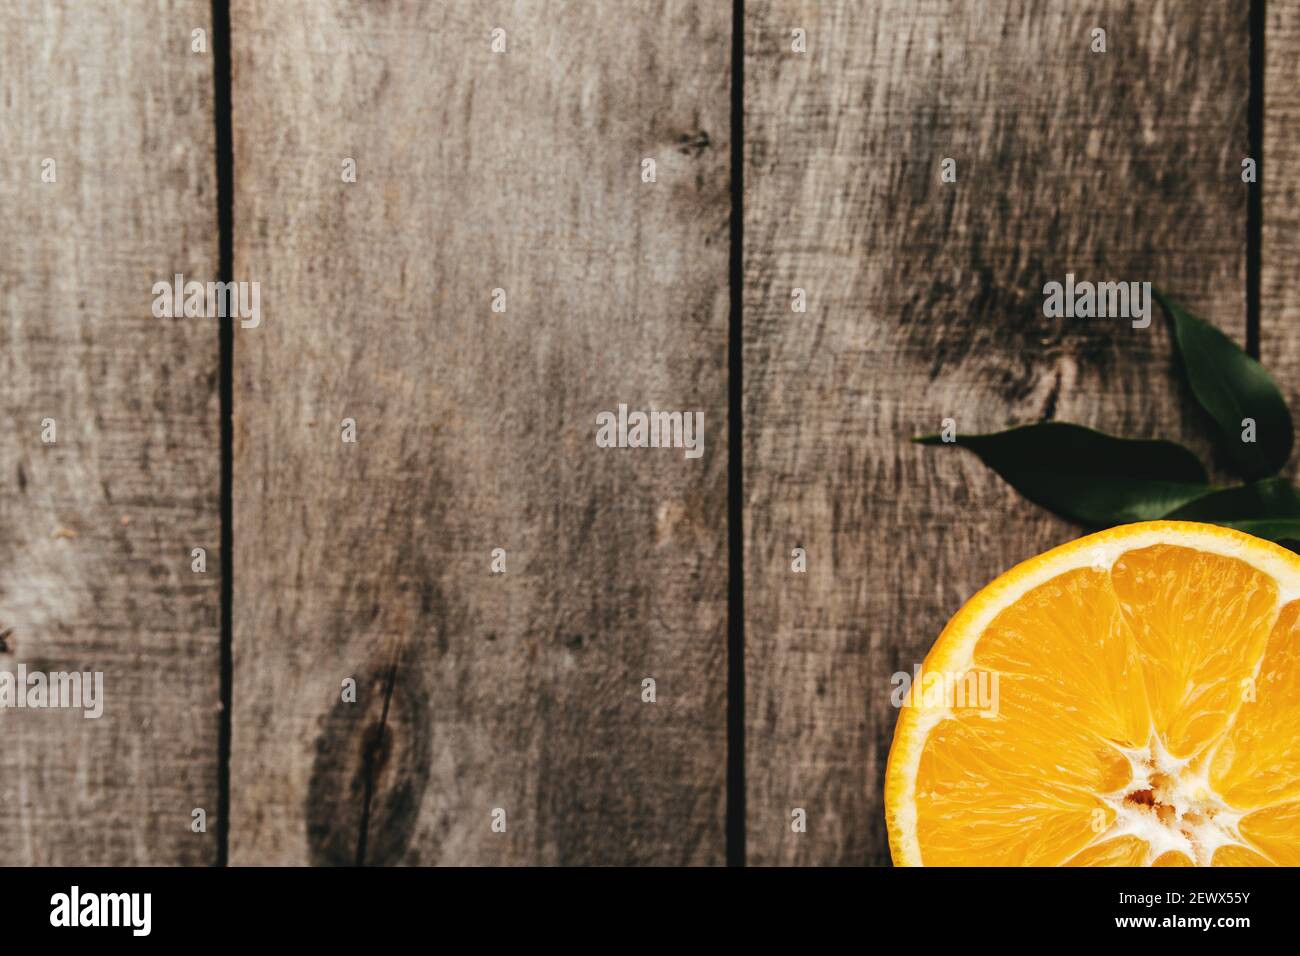 Tranches de fruits orange sur fond de bois gris. Pulpe et feuilles vertes. Photo de haute qualité Banque D'Images